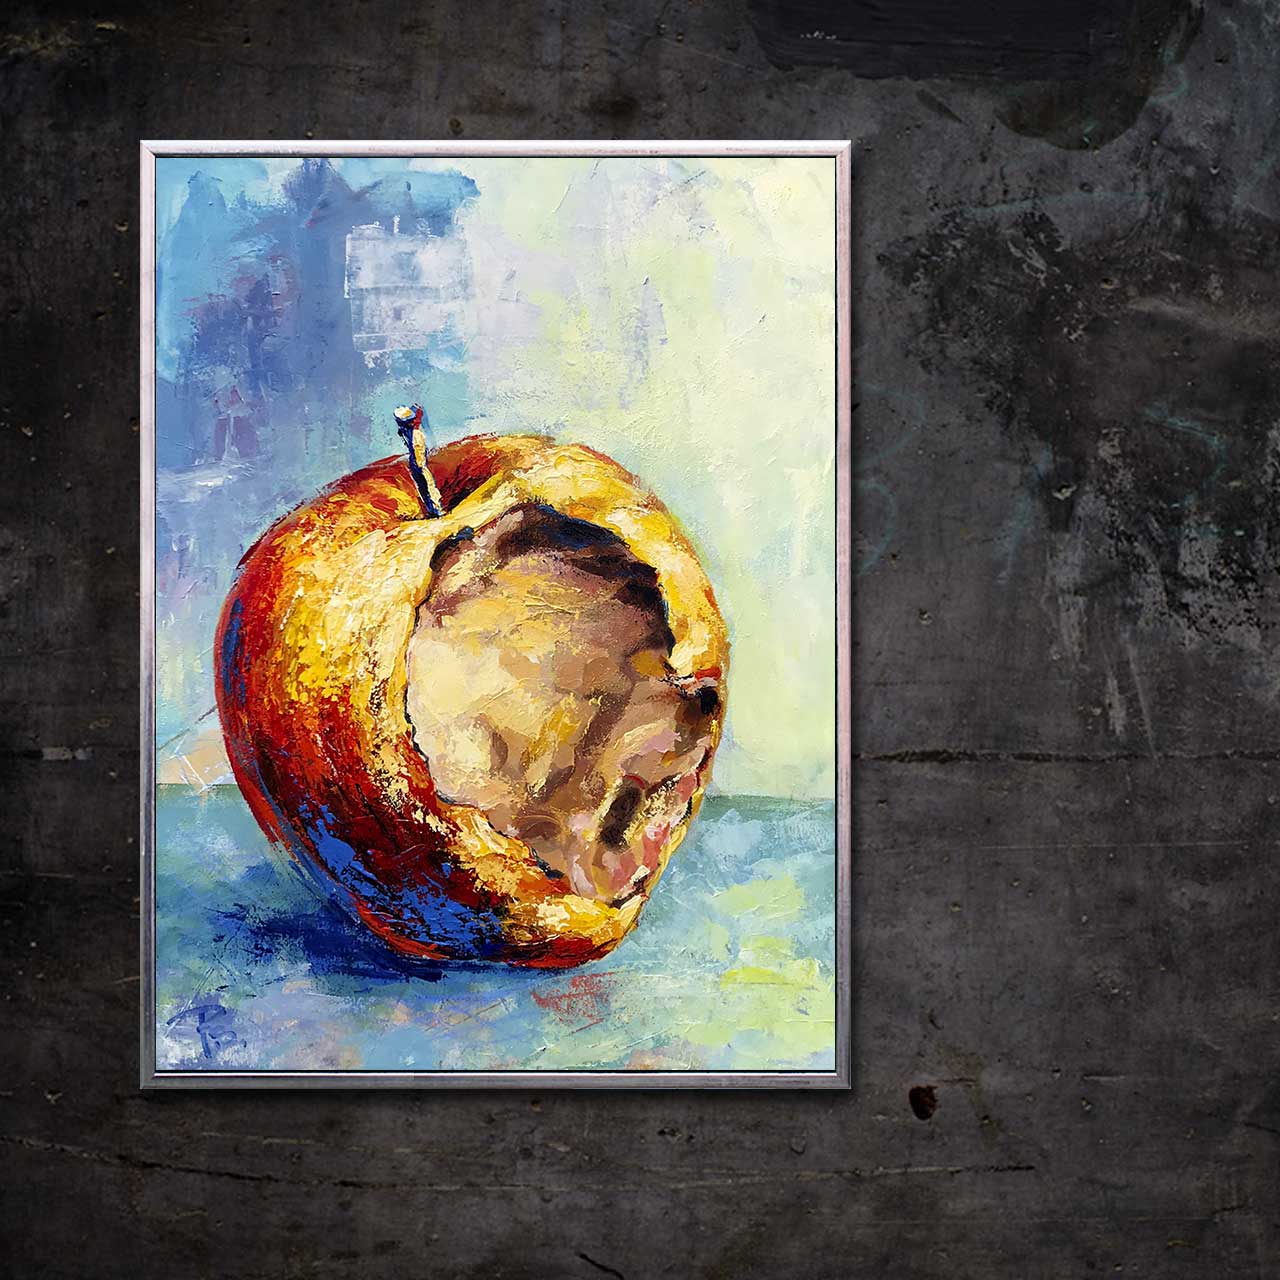 Æble med bid i og blå stilk 02 - malet af Peter Simonsen. Akryl og pastel på lærred. Format: 60 x 80 cm